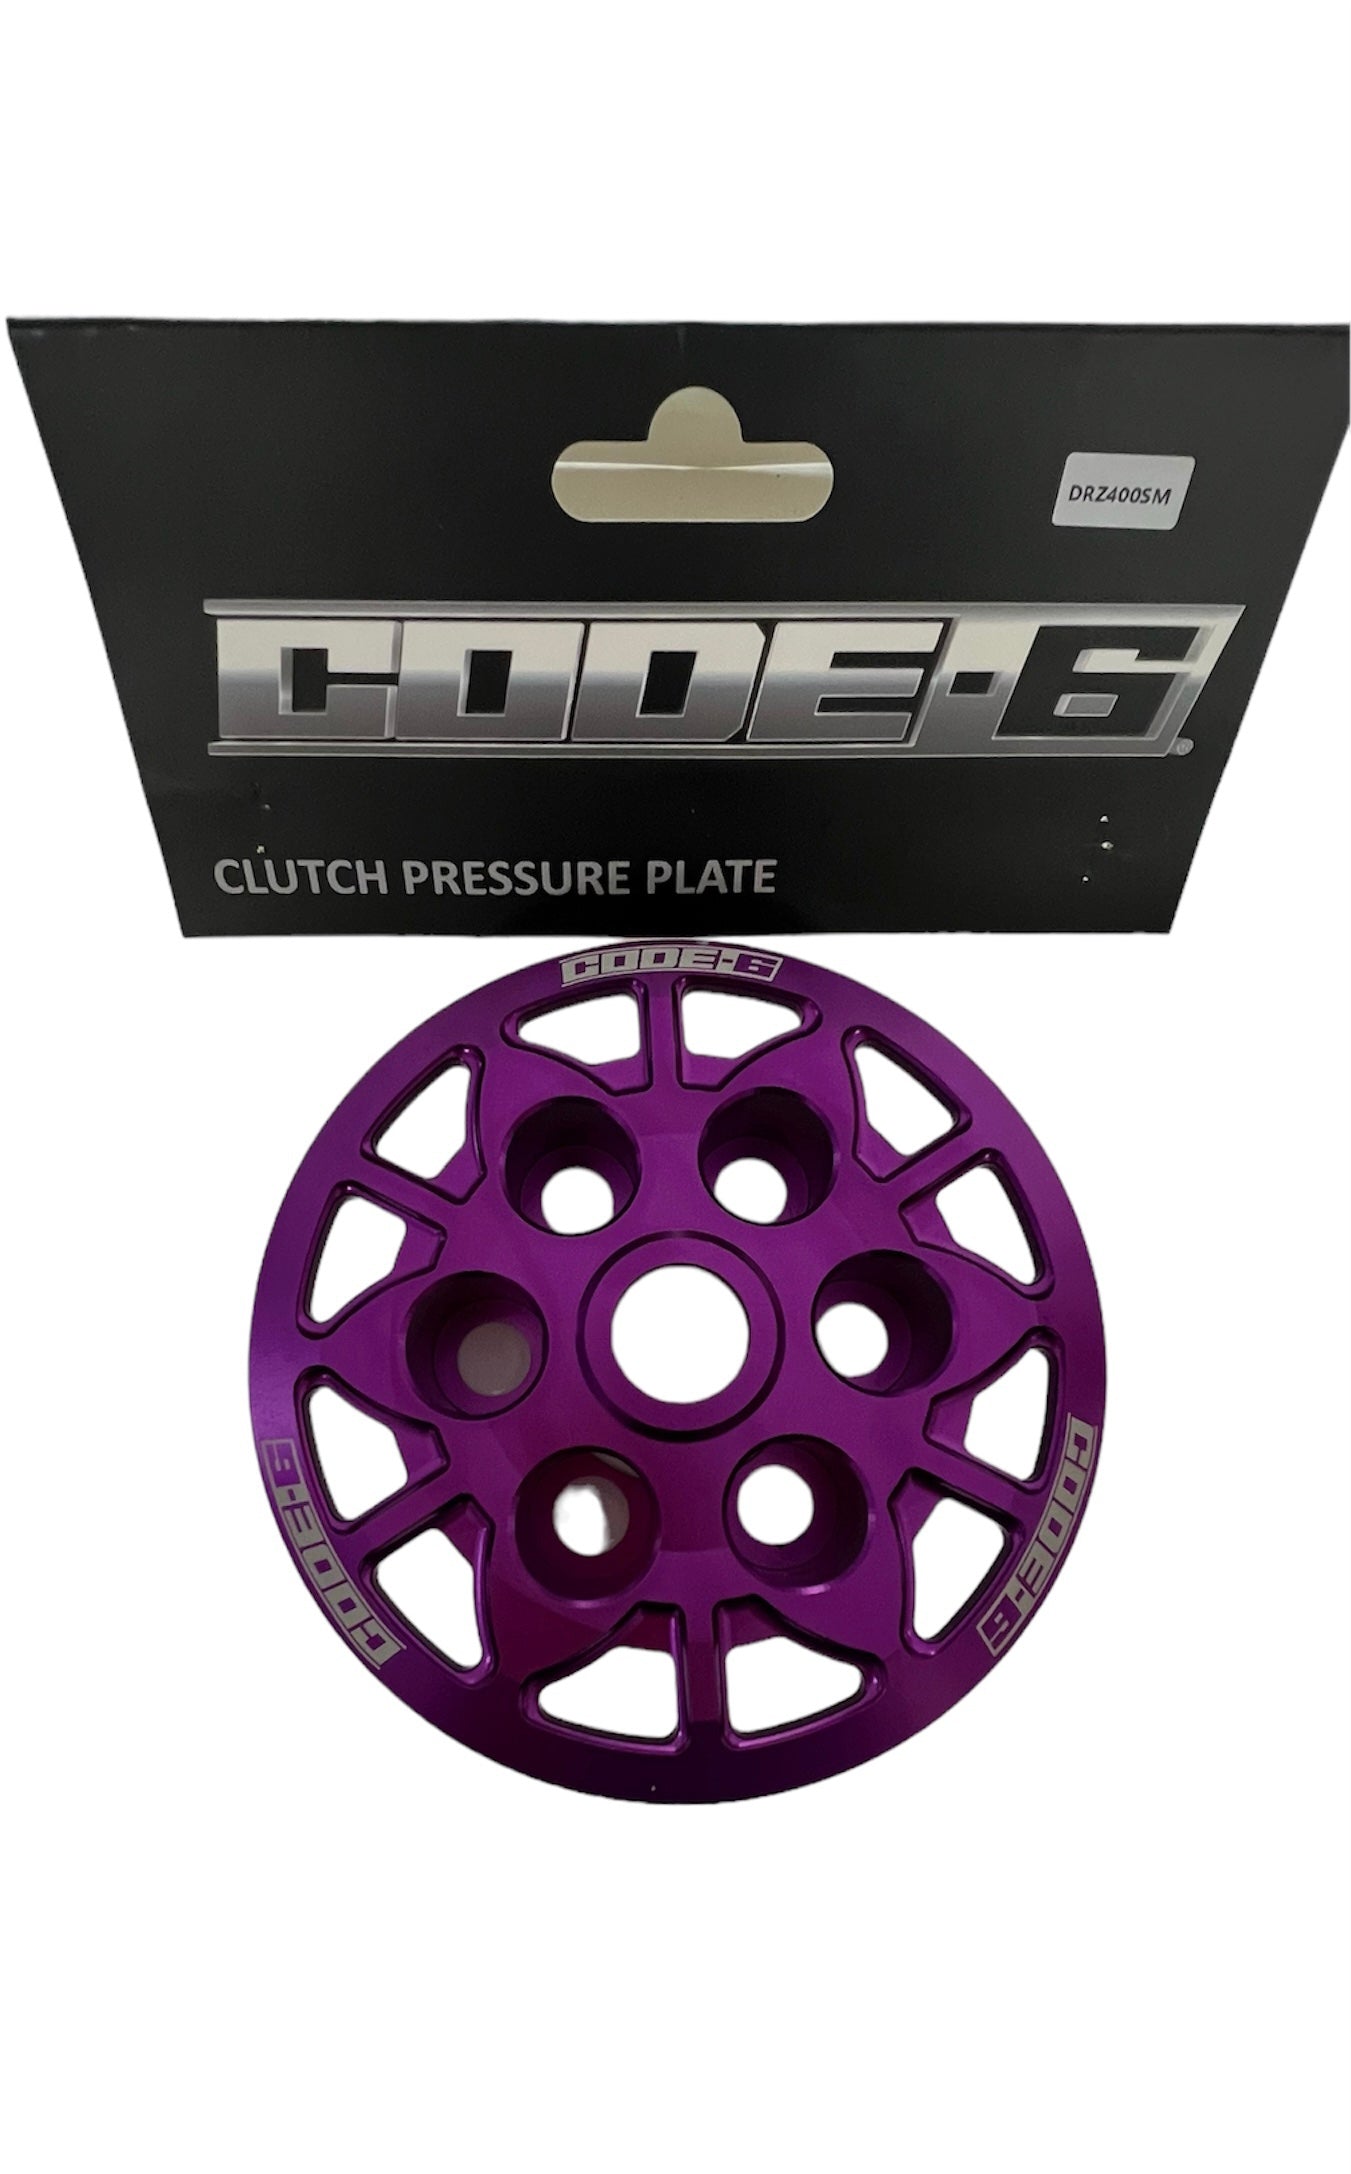 DRZ400 clutch pressure plate CODE 6